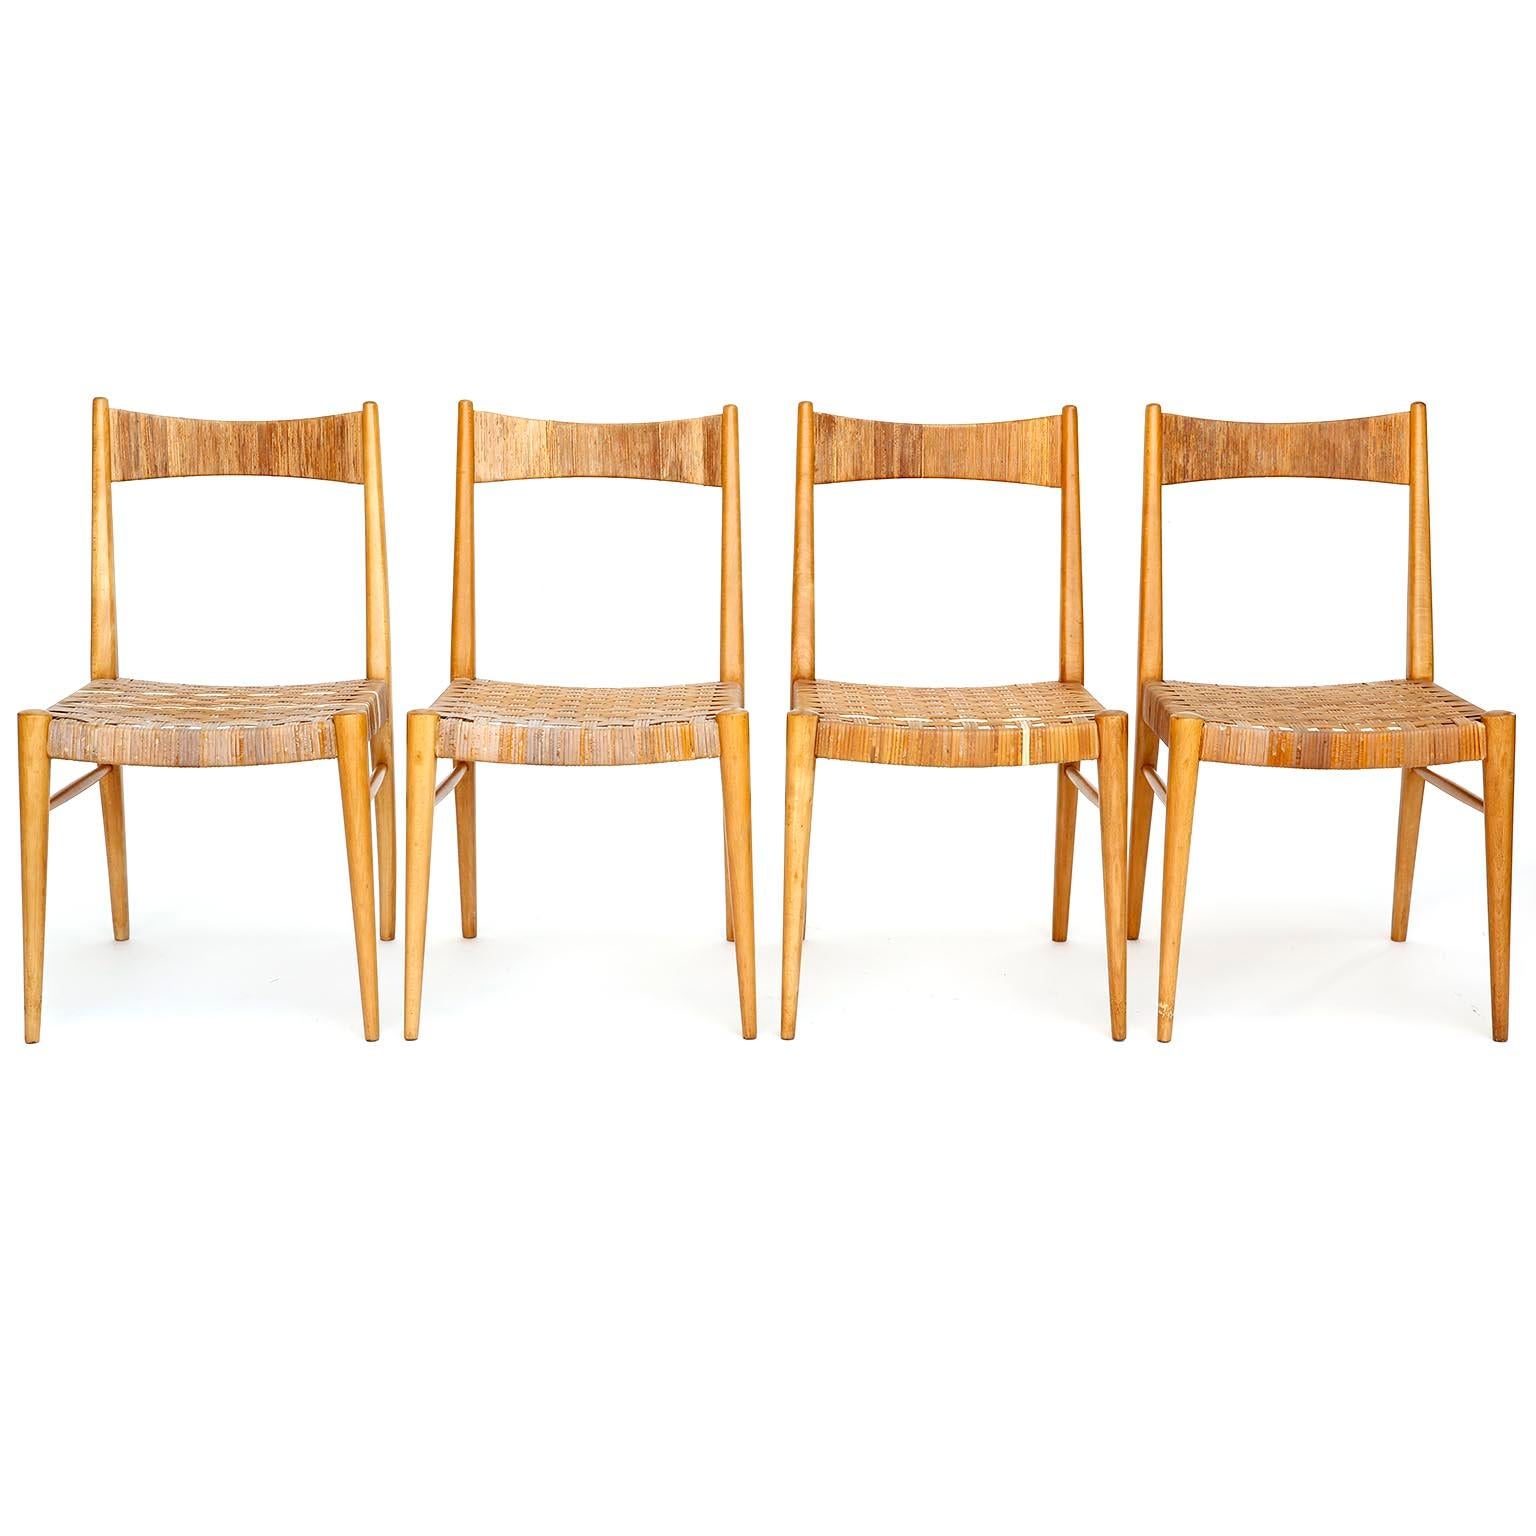 Un ensemble de quatre chaises de salle à manger ou d'appoint conçues par Anna-Luelja Praun (1906-2004), Vienne, Autriche, fabriquées au milieu du siècle, vers 1950.
Les sièges et les dossiers sont recouverts de canne ou d'osier. Le cannage de deux